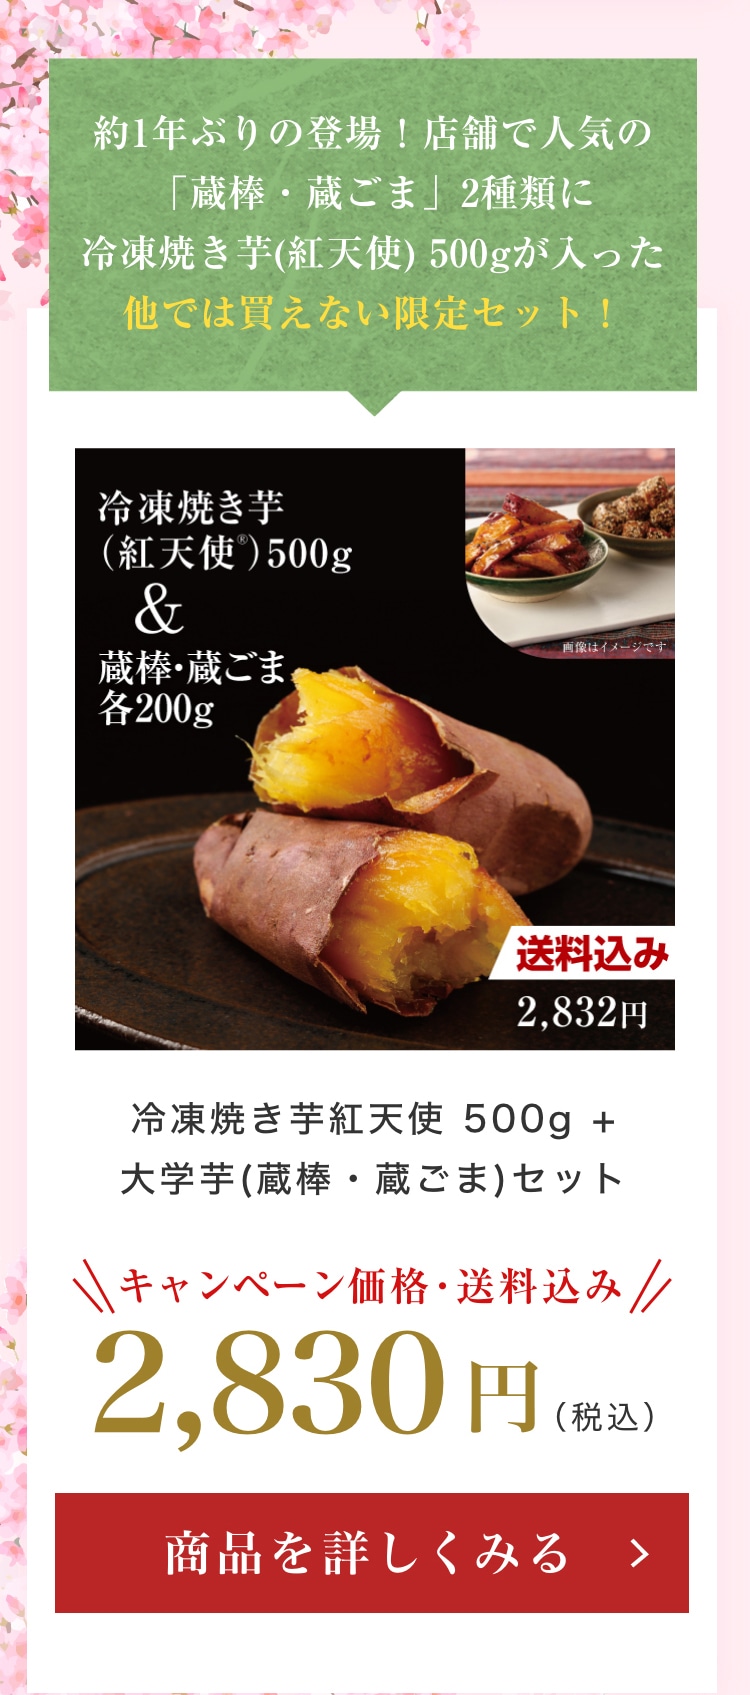 冷凍焼き芋紅天使 500g + 大学芋(蔵棒・蔵ごま)セット